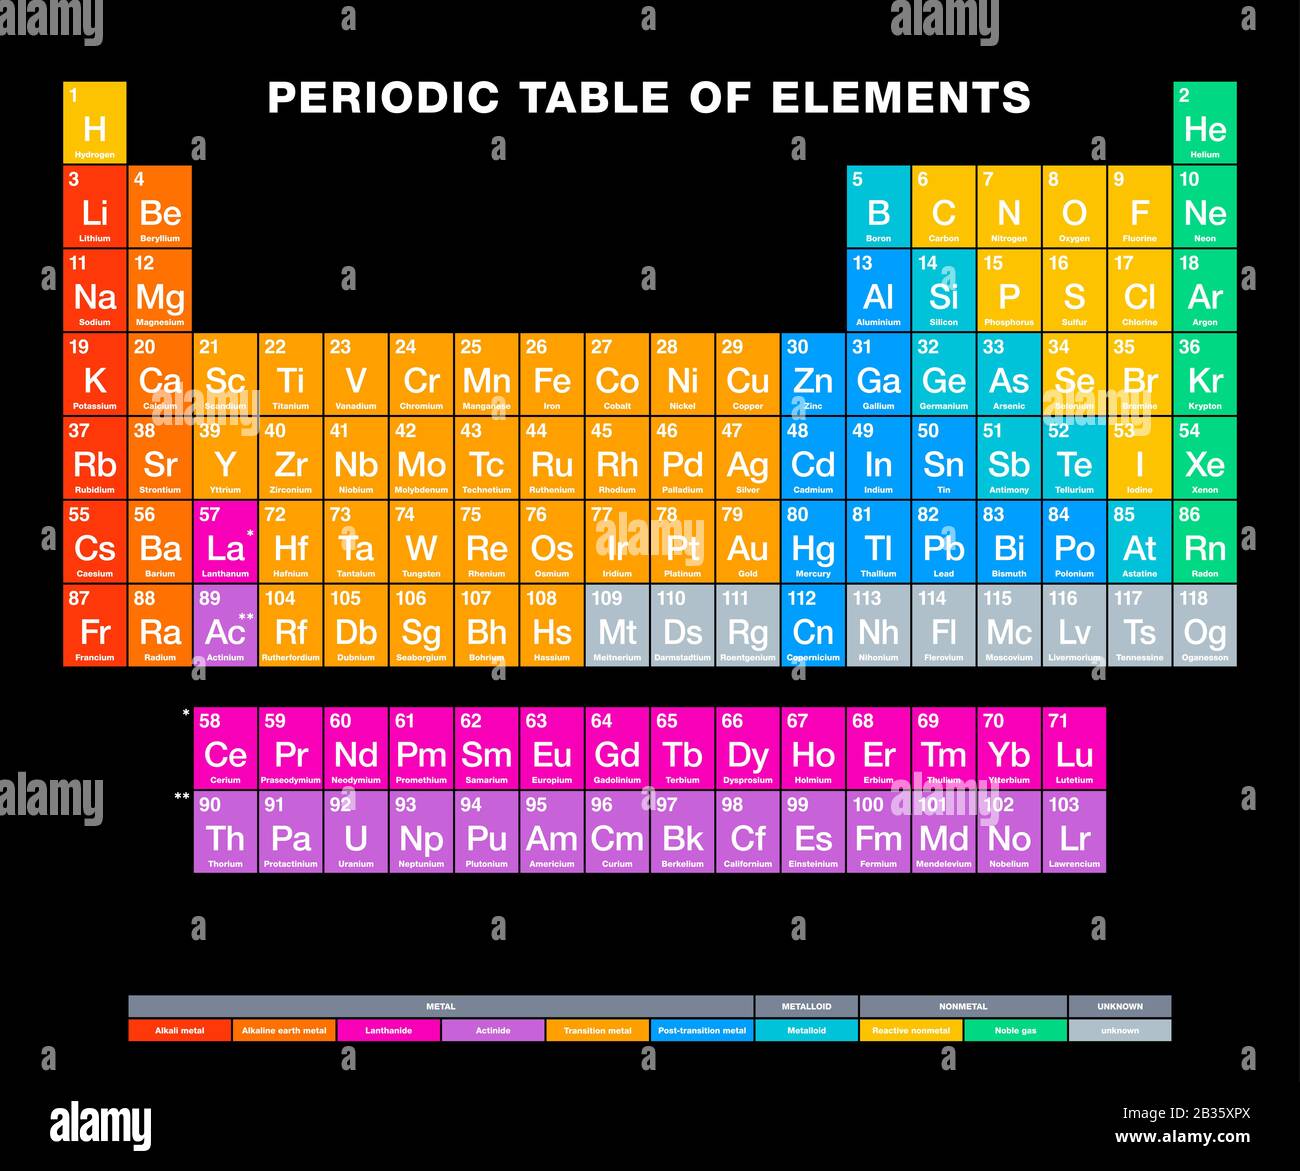 Tavola periodica degli elementi su sfondo nero. Tabella periodica. Visualizzazione tabellare degli elementi chimici. Numeri atomici, nomi chimici e simboli. Foto Stock